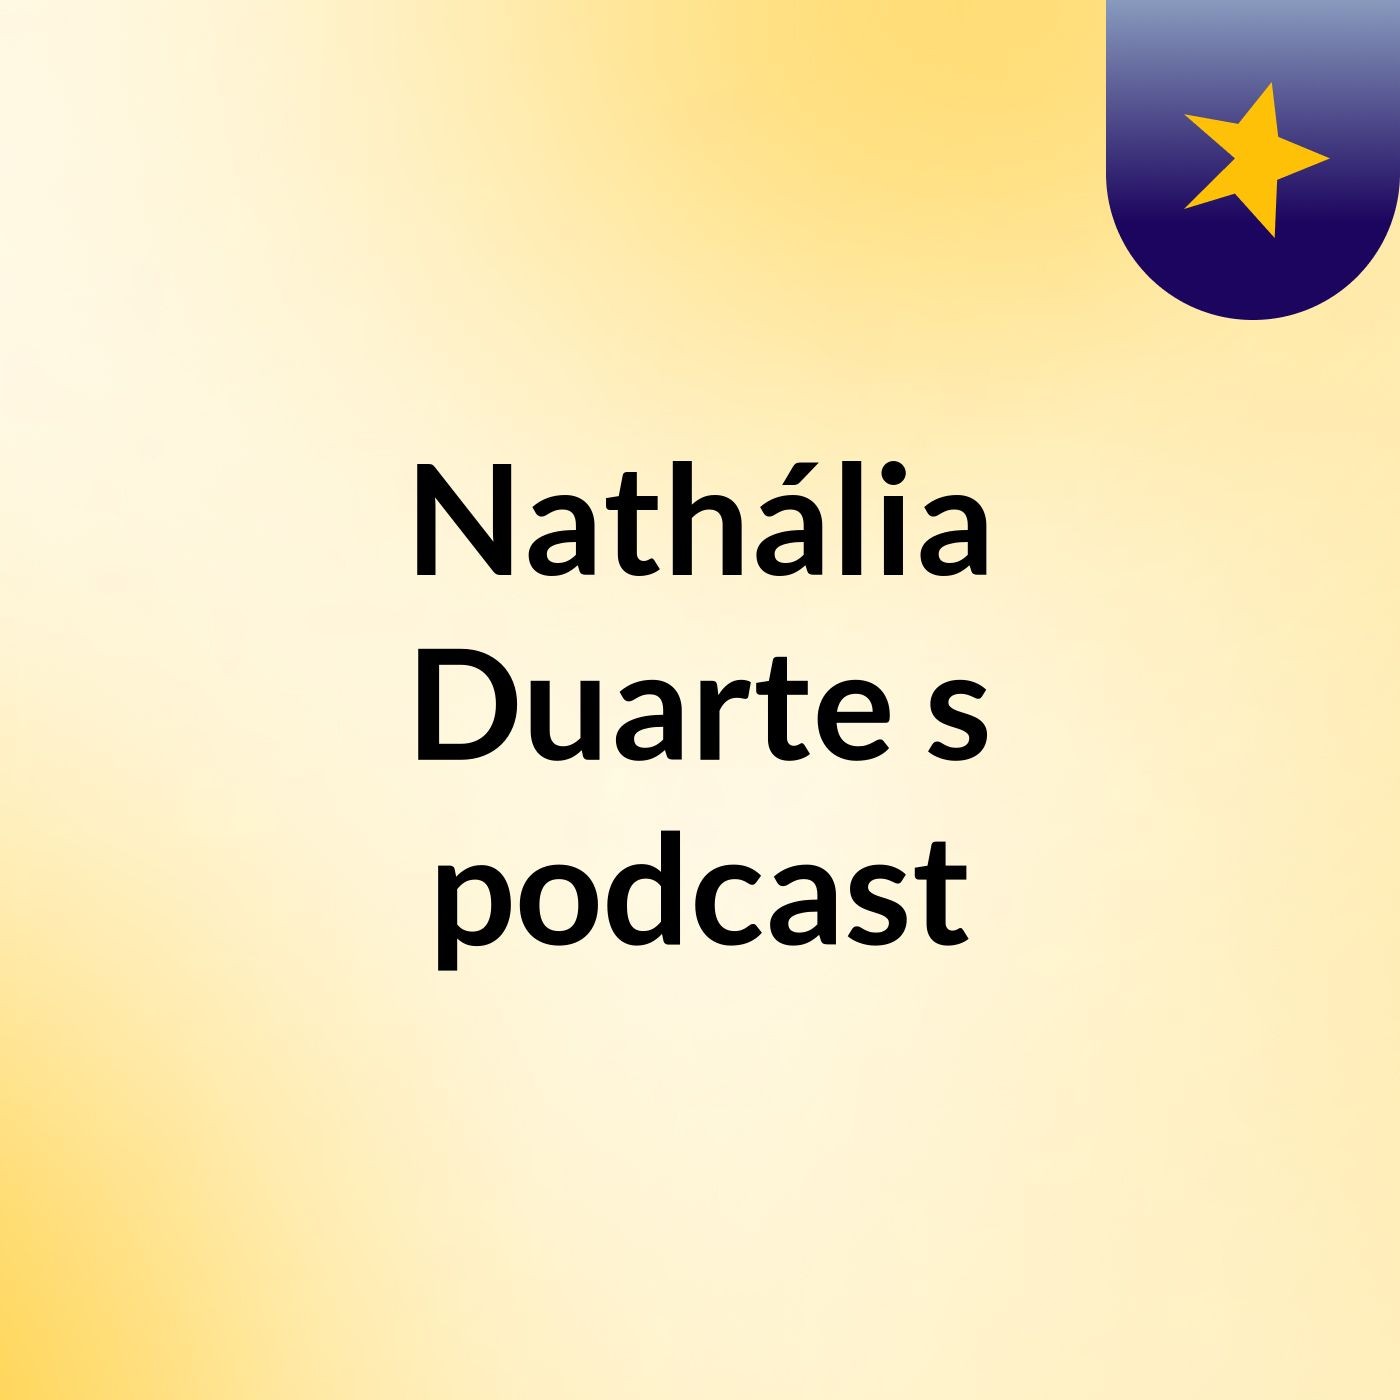 Nathália Duarte's podcast